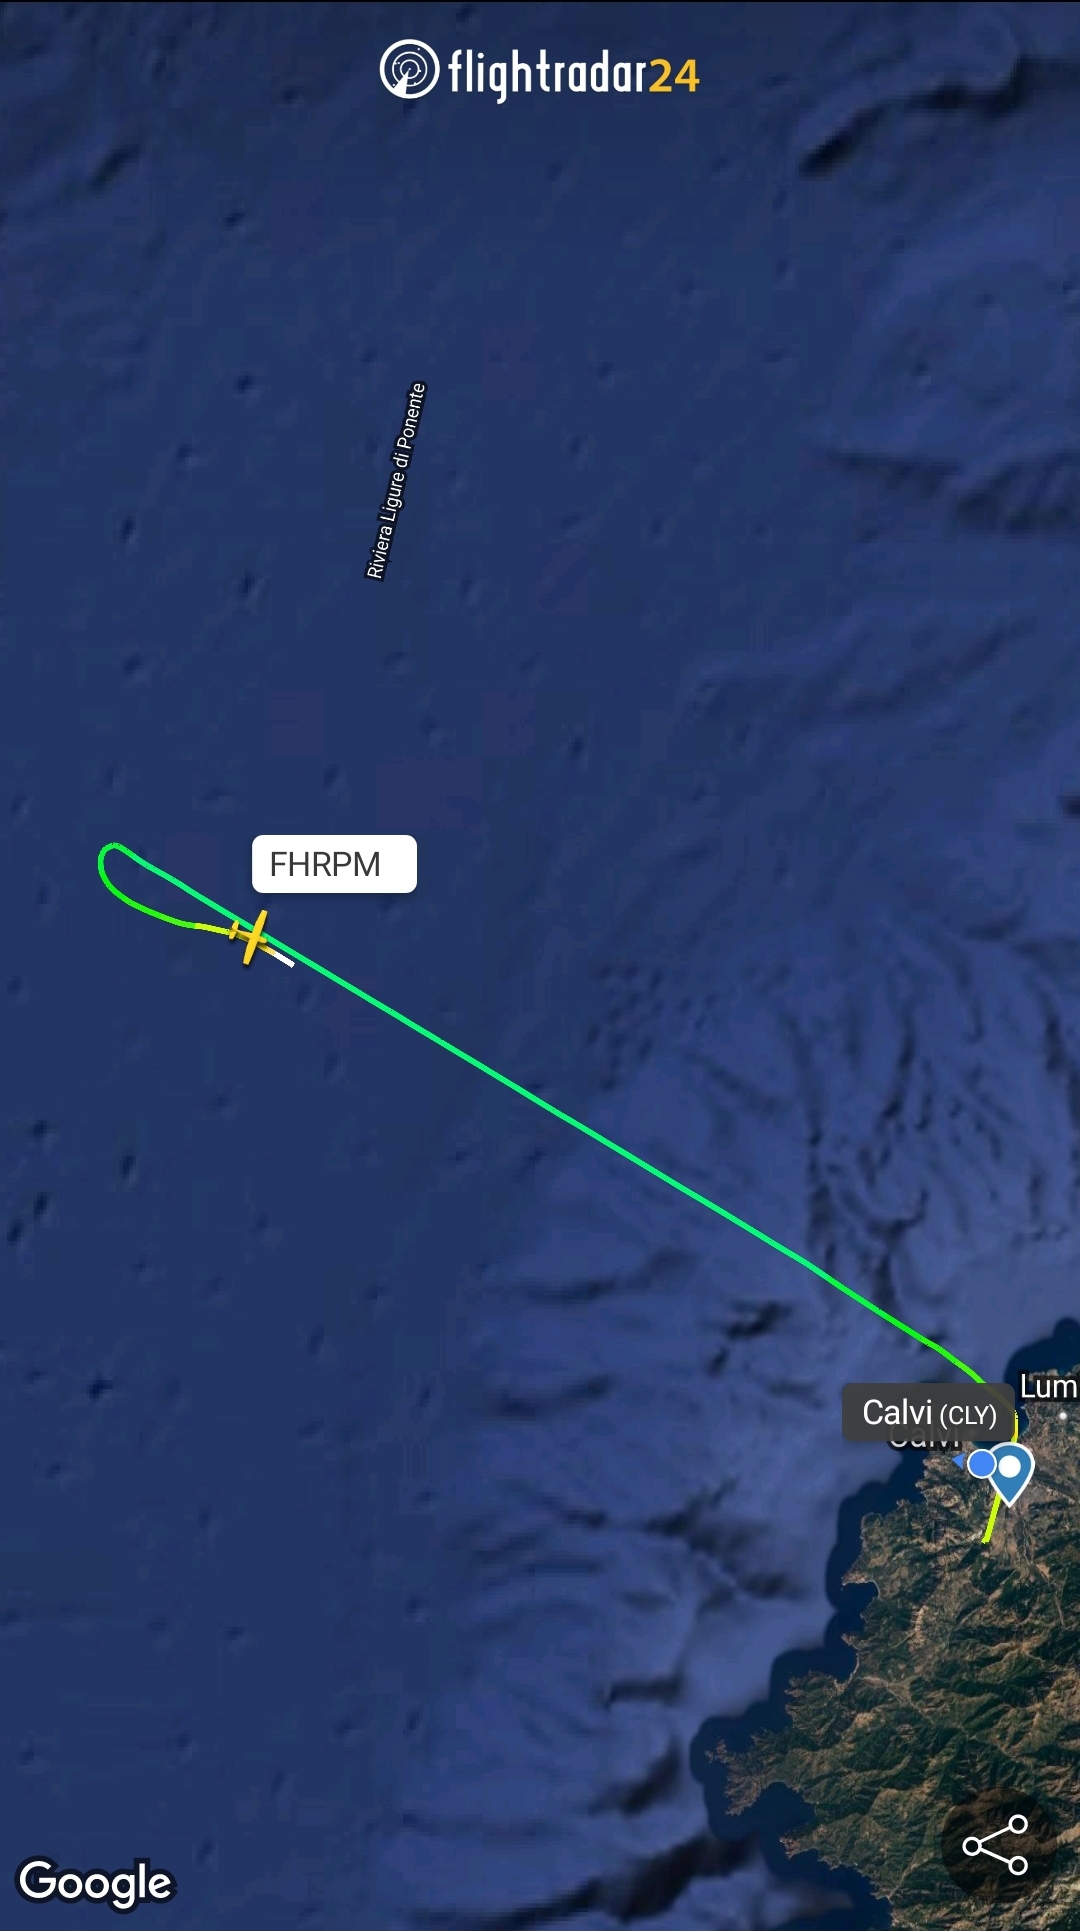 L'avion de tourisme avec 3 personnes à son bord a fait demi-tour vers Calvi avant d'amerrir en mer